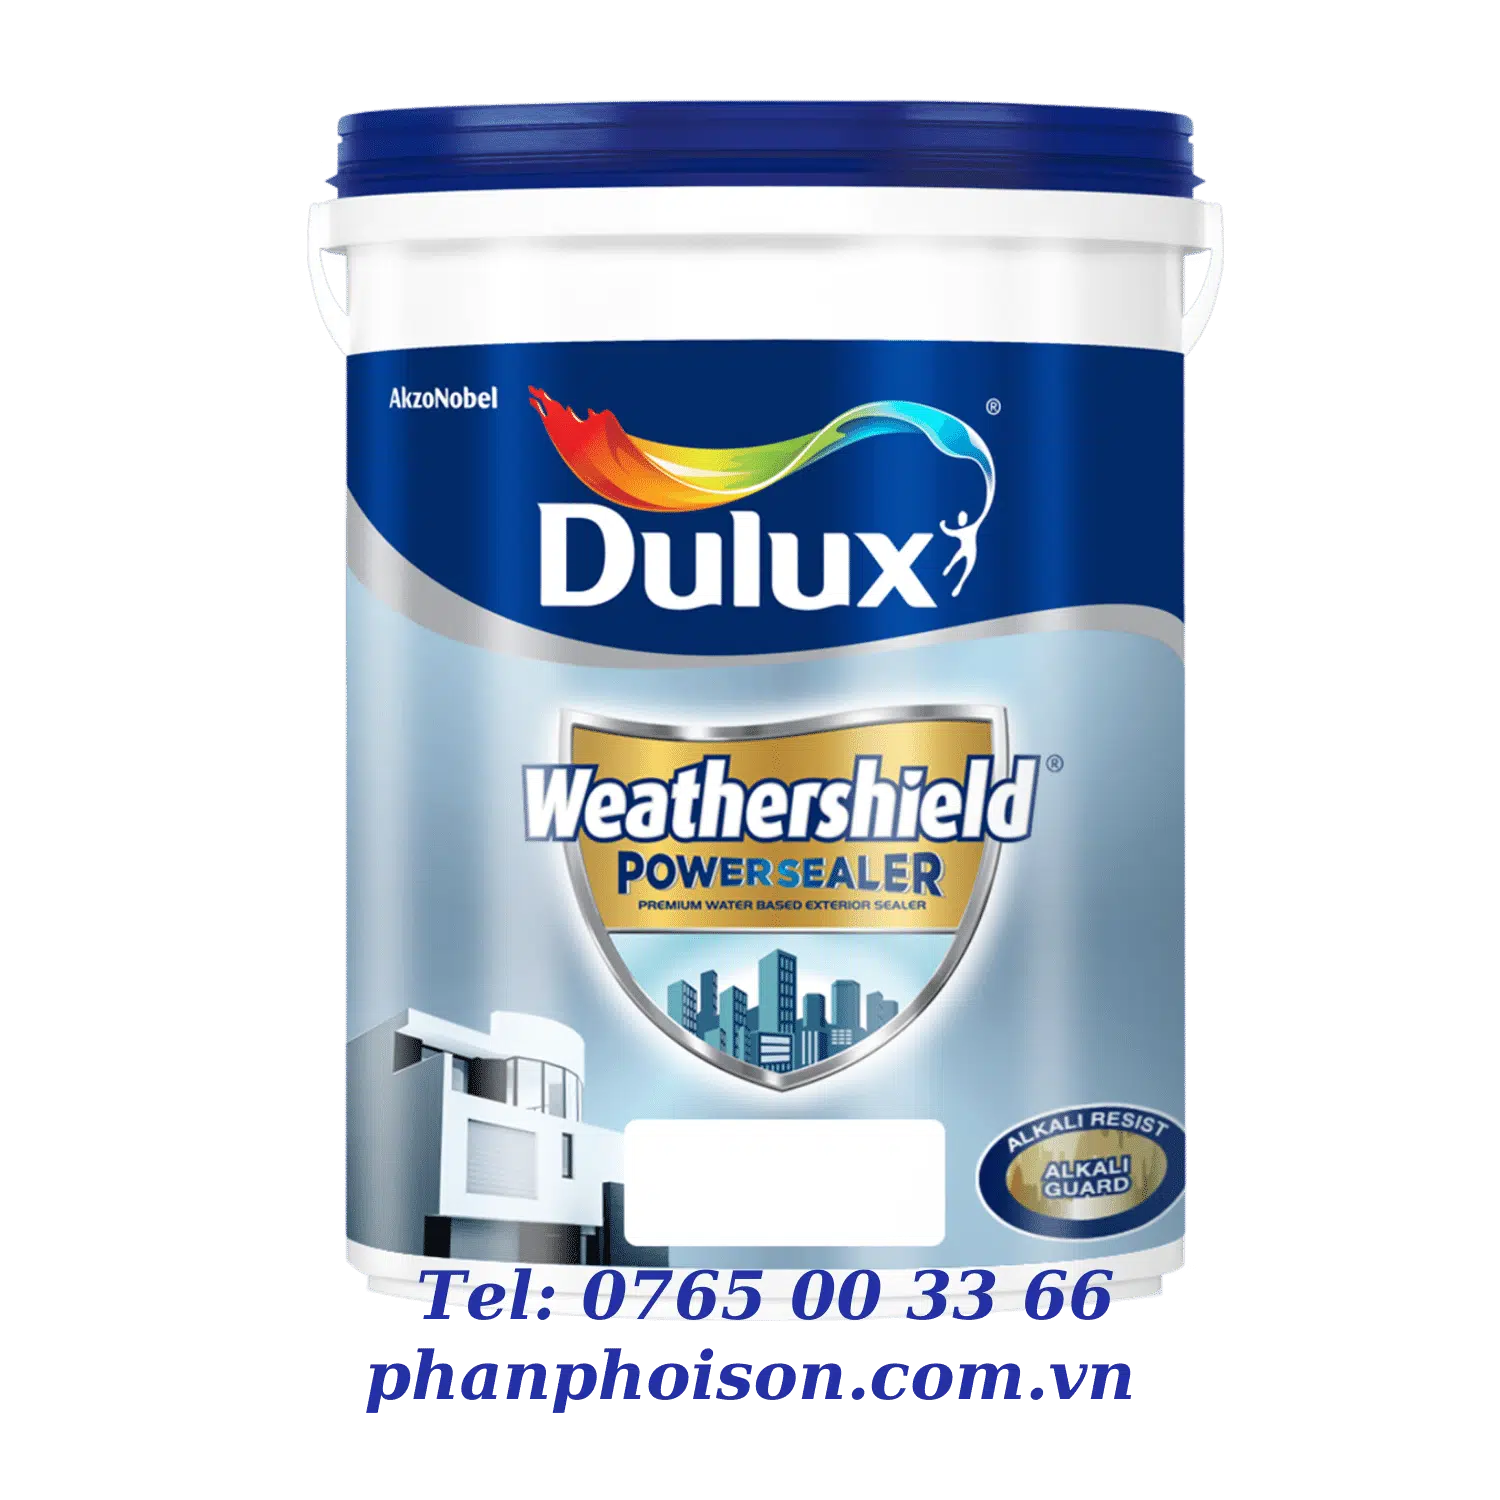 Dulux Weathershield Powersealer